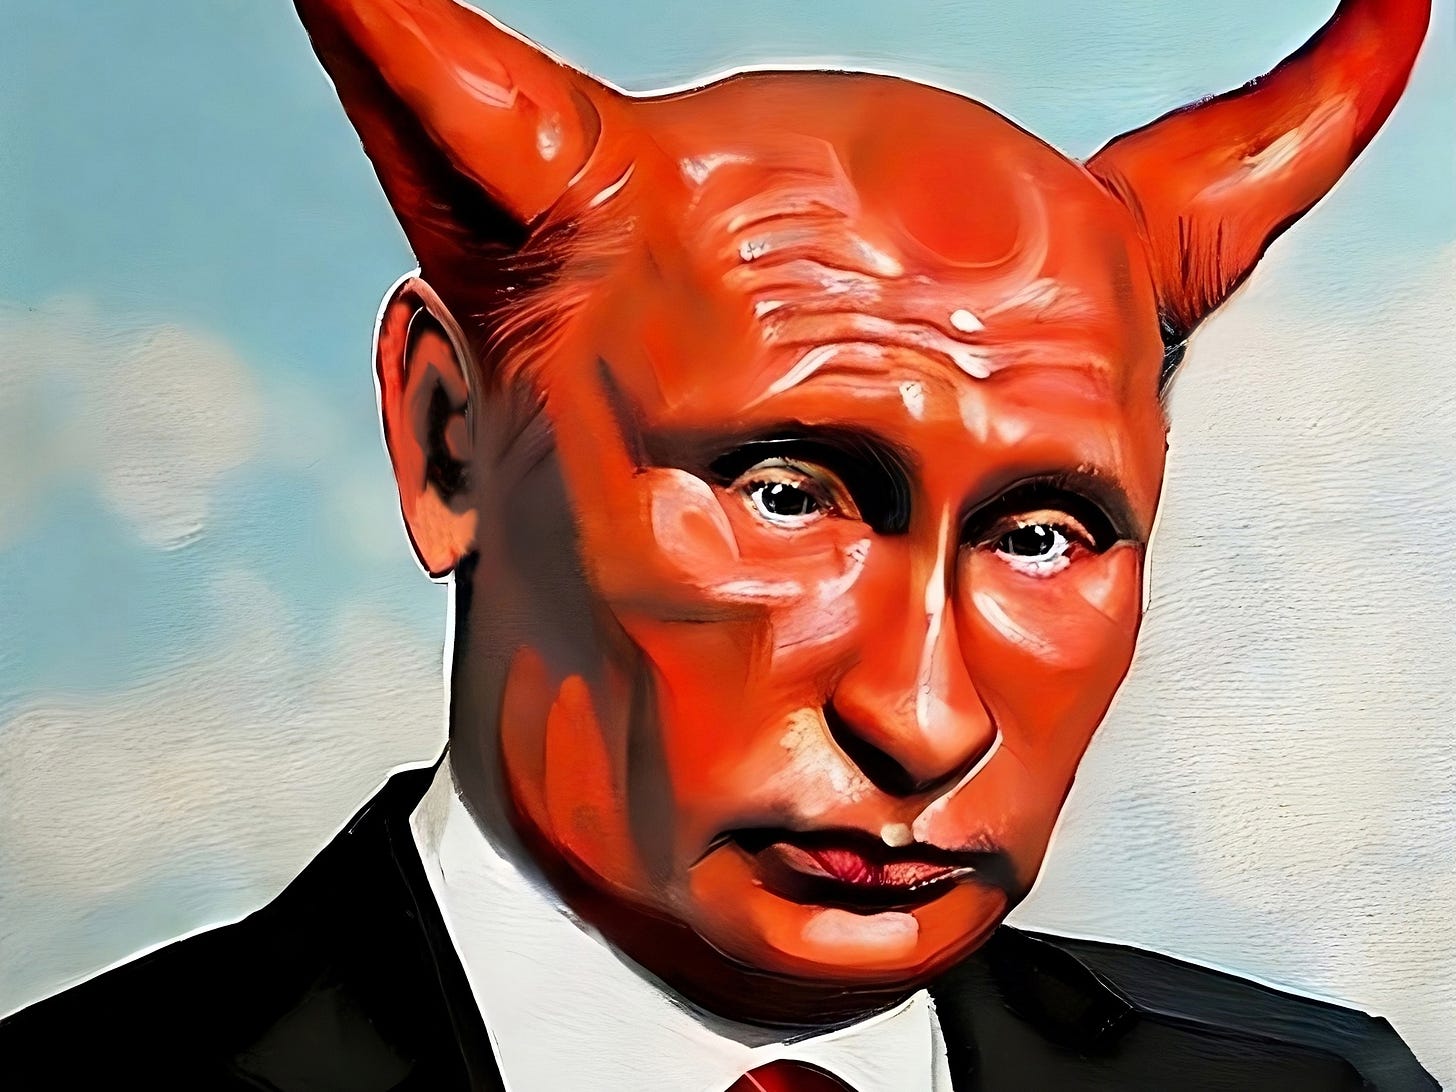 Putin as the Devil by Pablo Perez